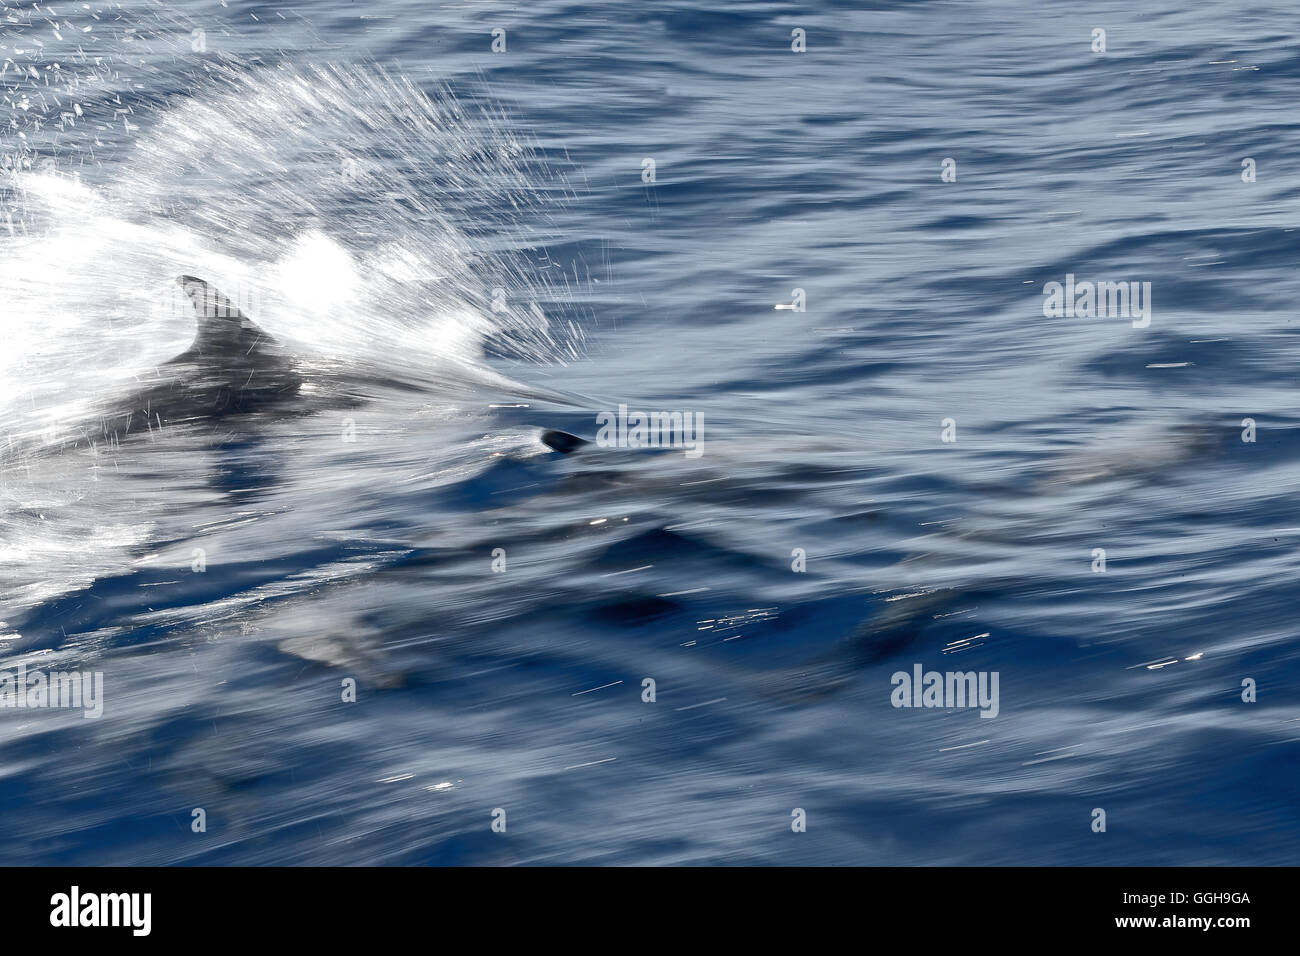 Nuotare con i delfini, Dominica, Piccole Antille, dei Caraibi Foto Stock